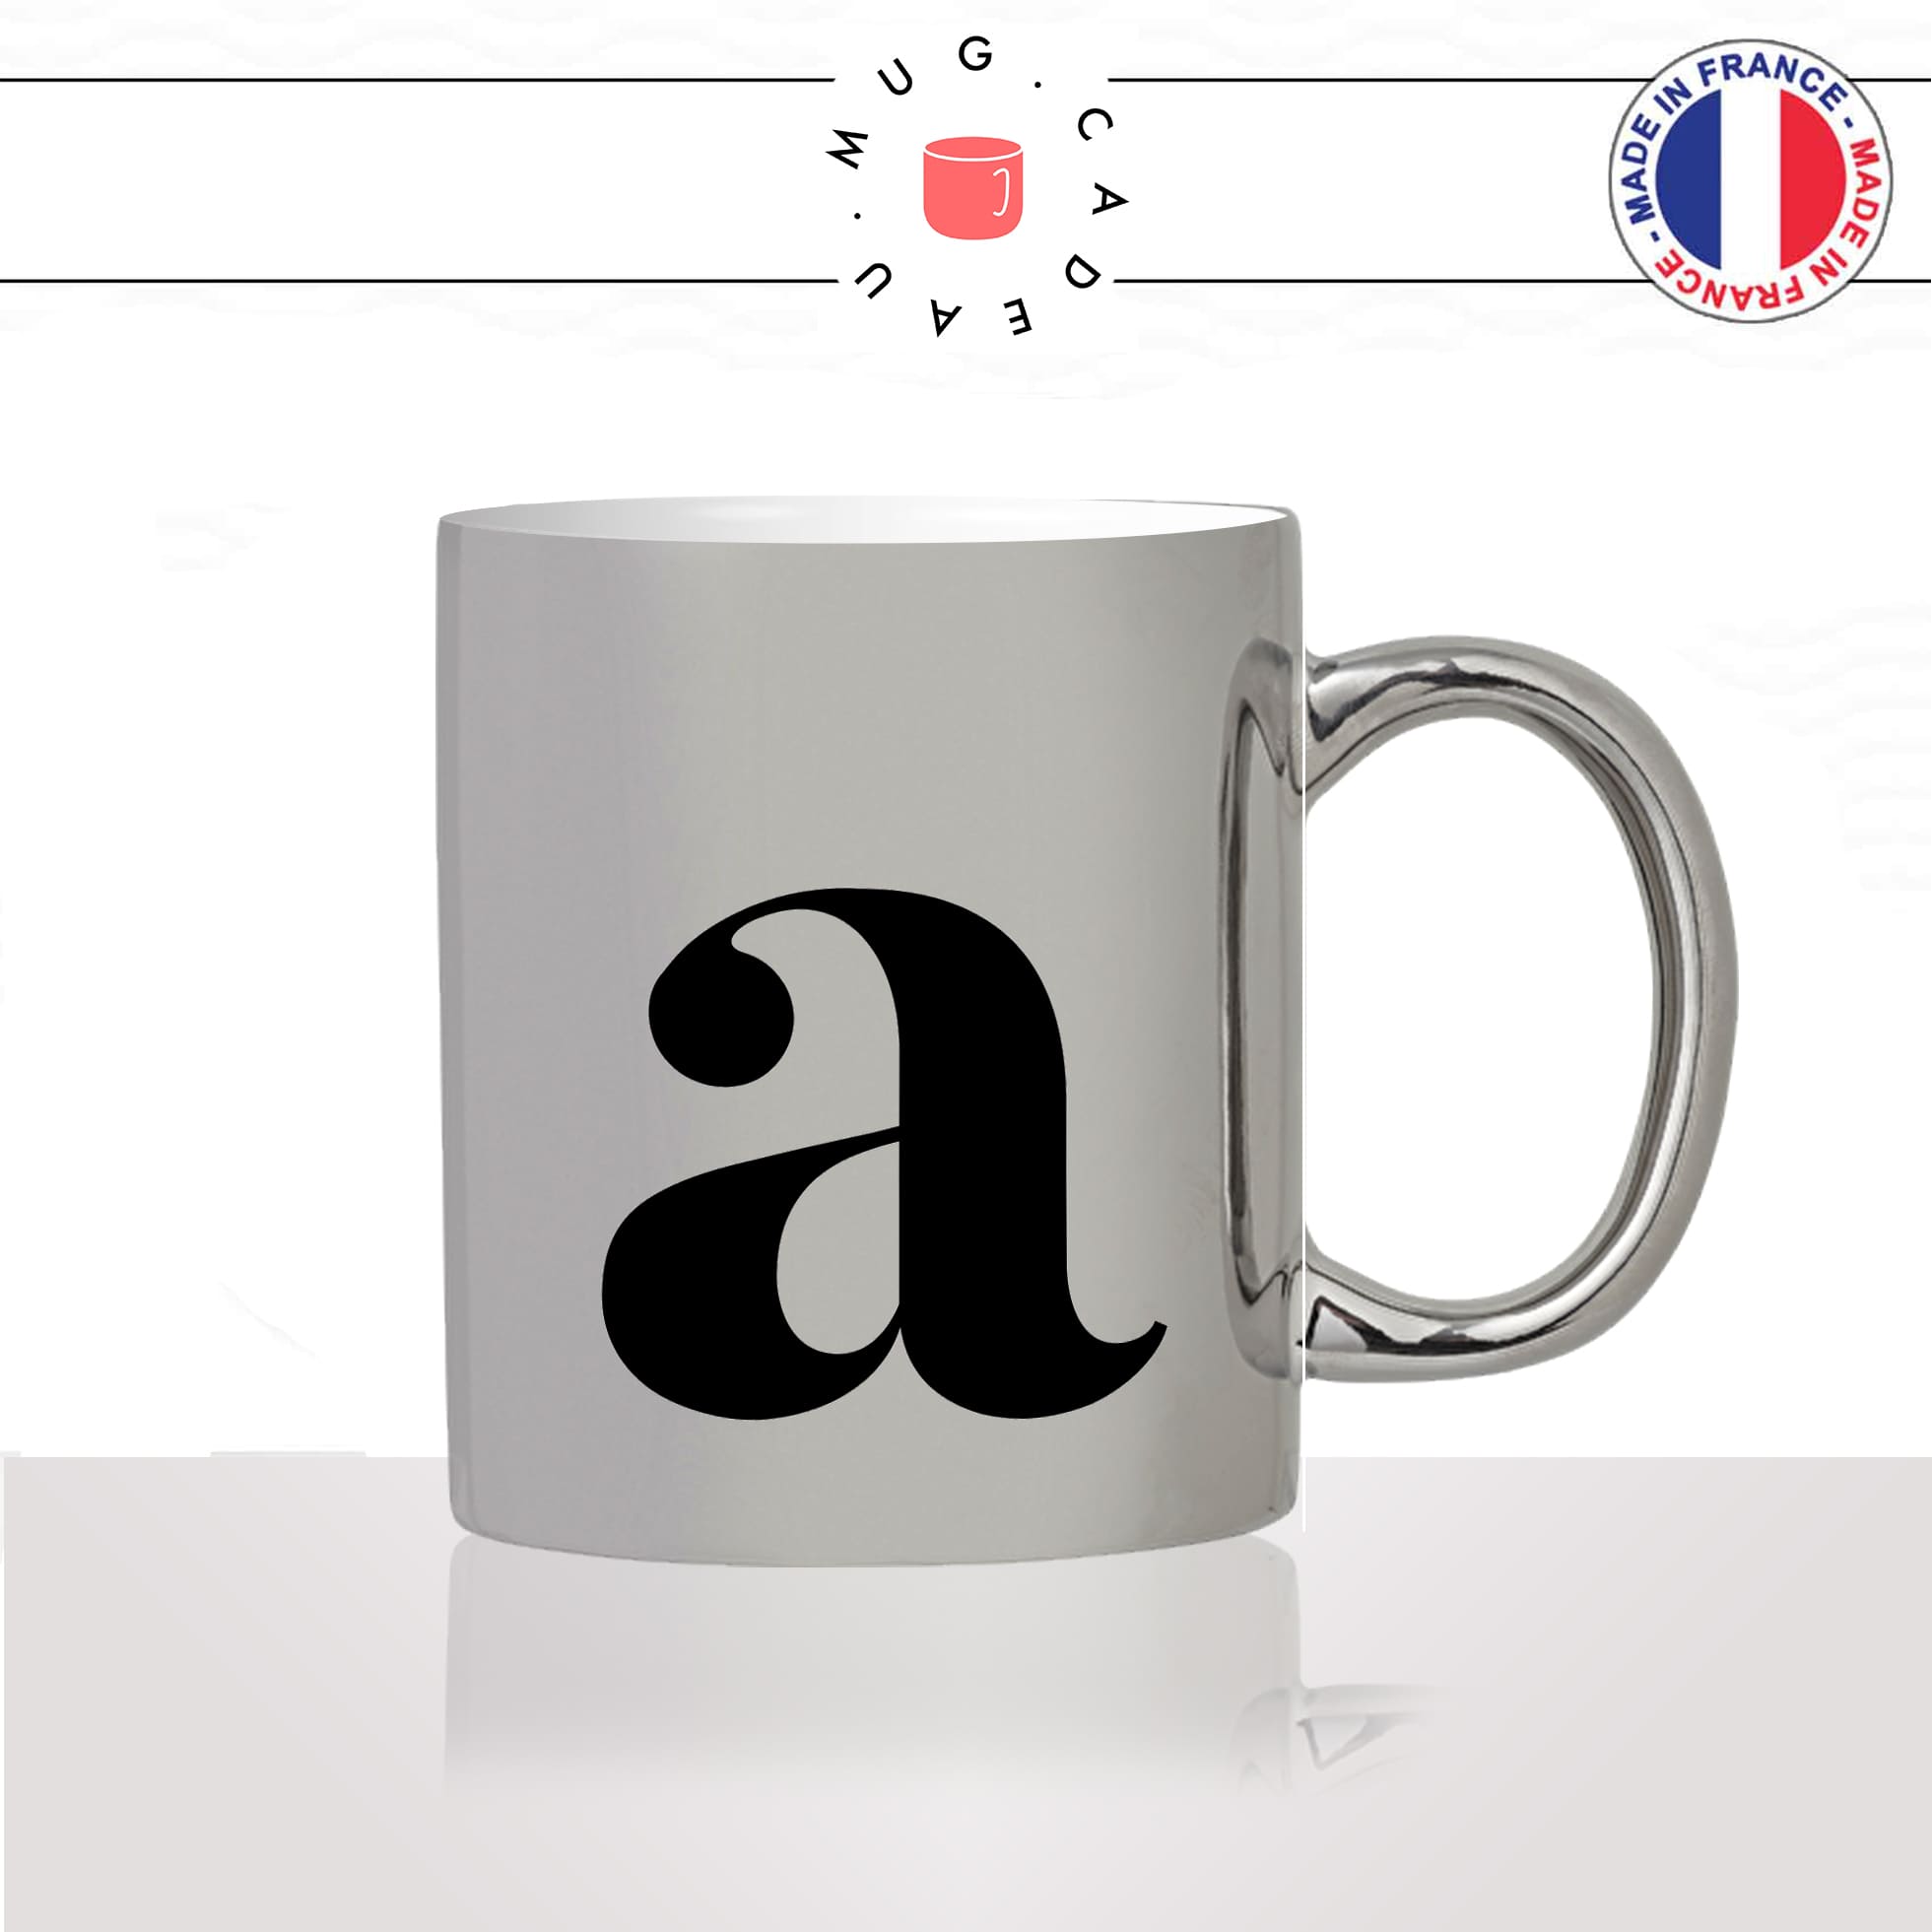 mug-tasse-argent-argenté-silver-initiale-A-prénom-audrey-anne-anais-alizée-aurélie-lettre-collegue-original-idée-cadeau-fun-cool-café-thé2